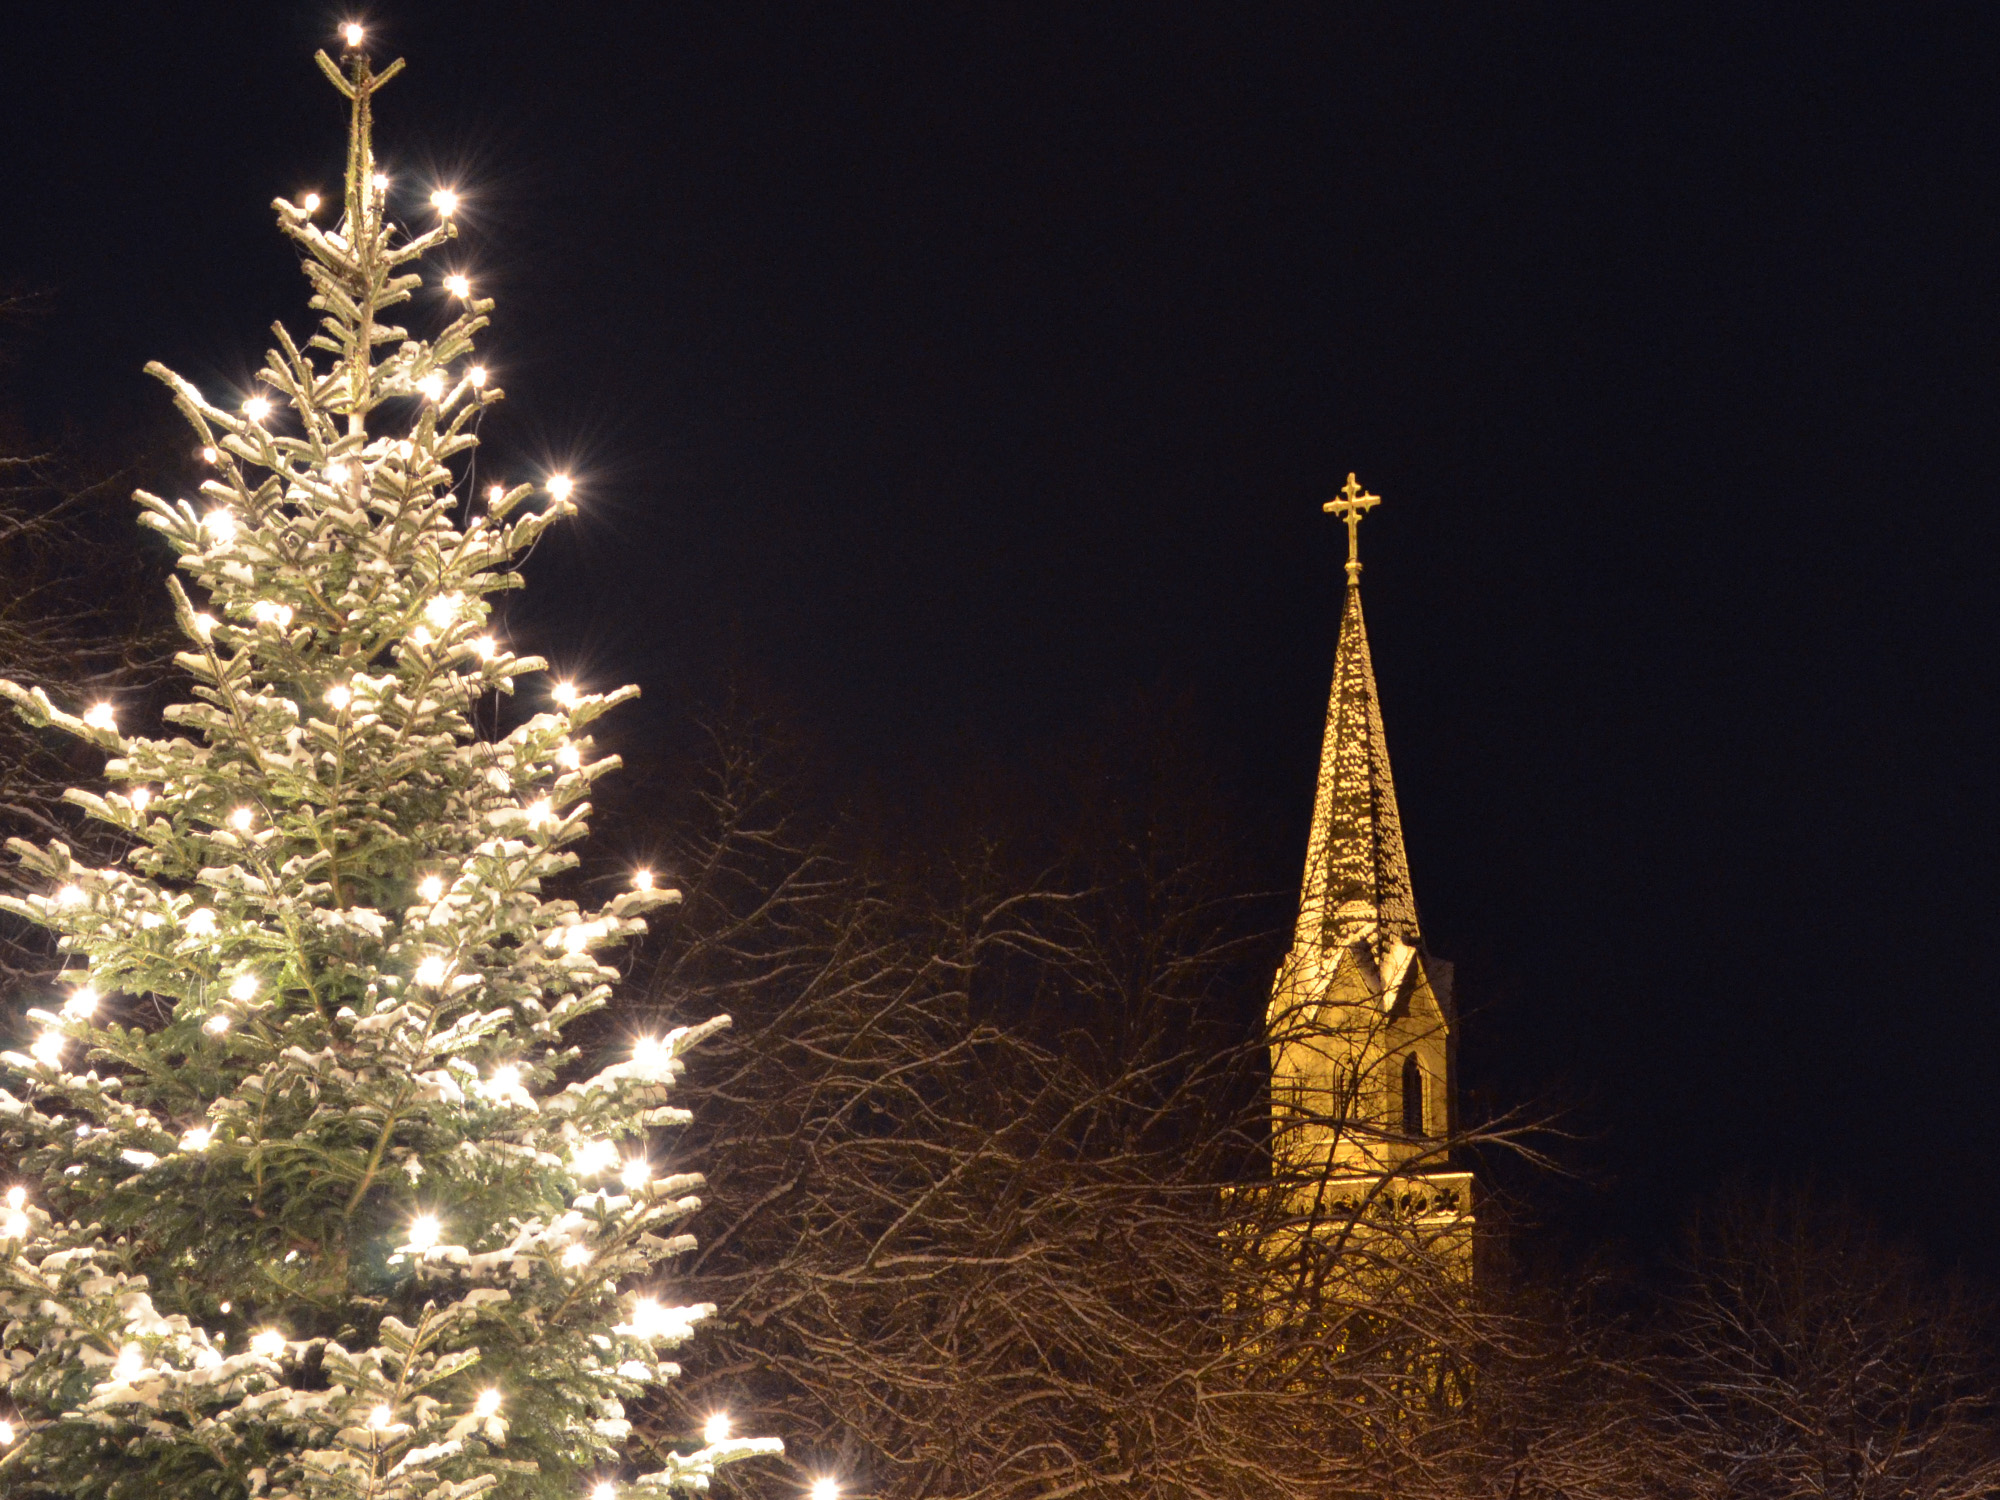 Am Goldkronacher Marktplatz: Blick über den Christbaum zum Kirchturm.